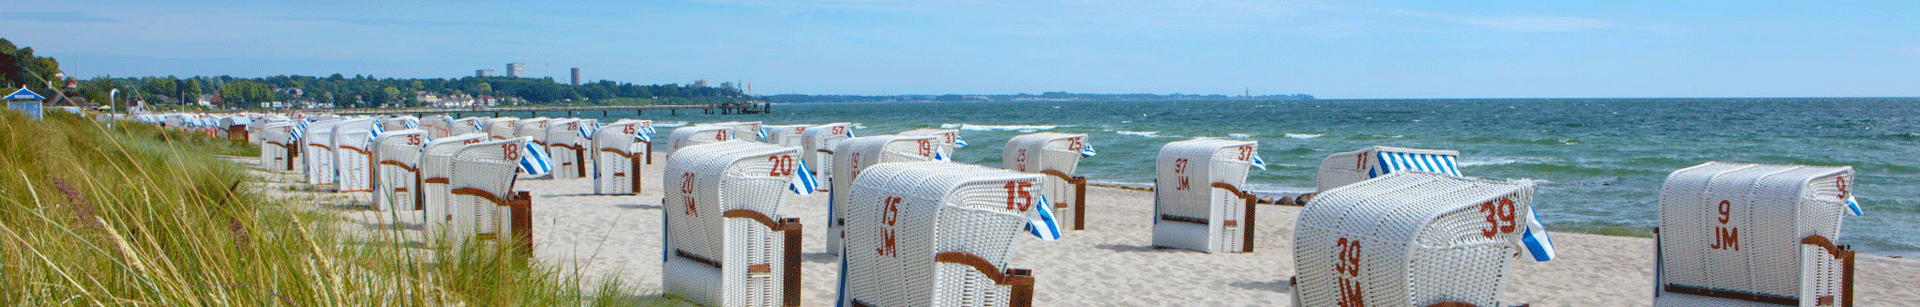 Strandkörbe an der Ostseeküste von Scharbeutz 2